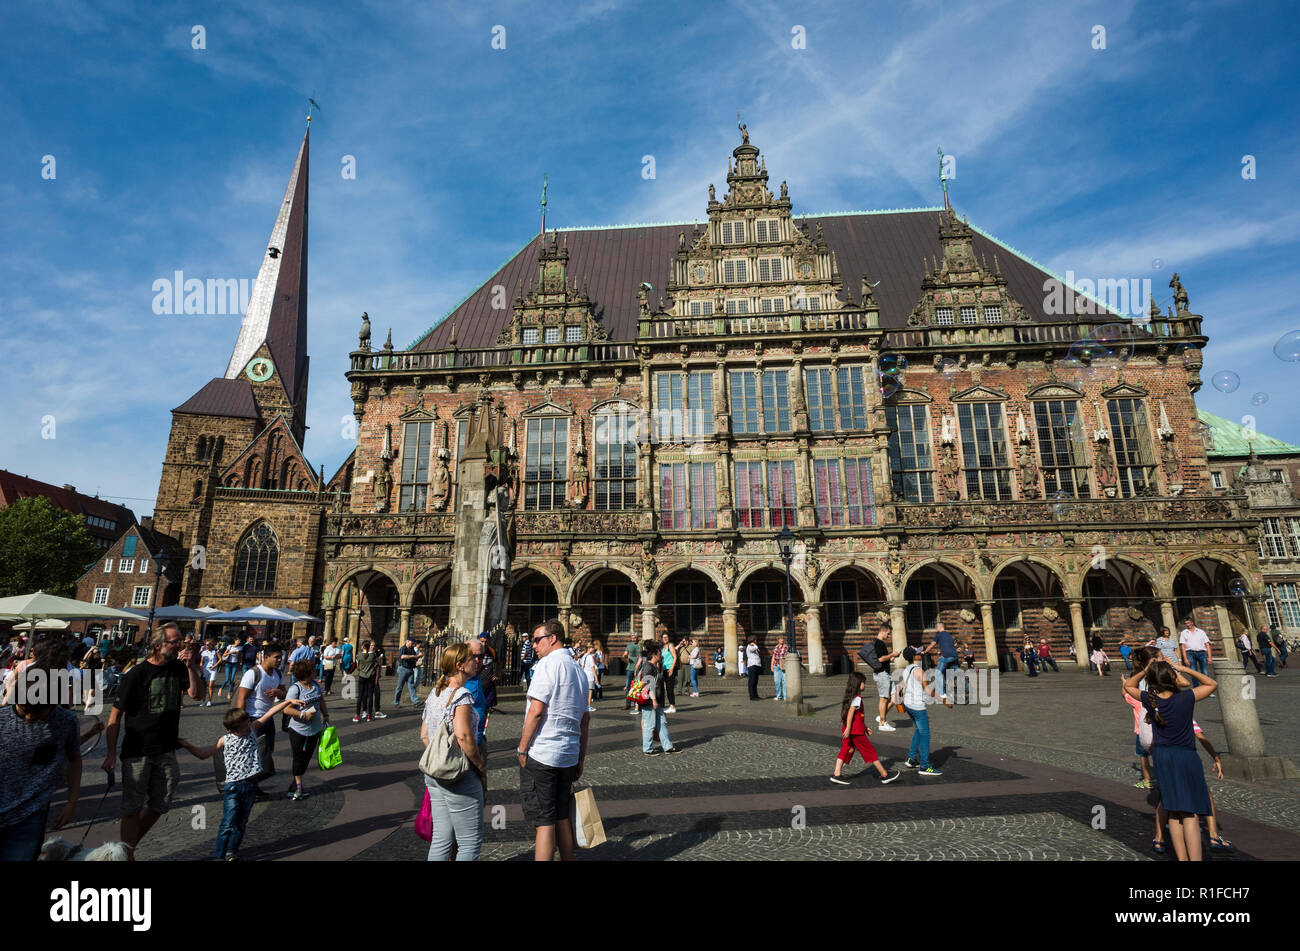 Marktplatz, Bremen. Deutschland Deutschland. Eine Szene über den Markt Platz gegenüber dem Rathaus, Rathous. Es ist ein sonniger Tag, so gibt es viele touristische Urlauber aus erkunden und genießen die Sonne. Stockfoto